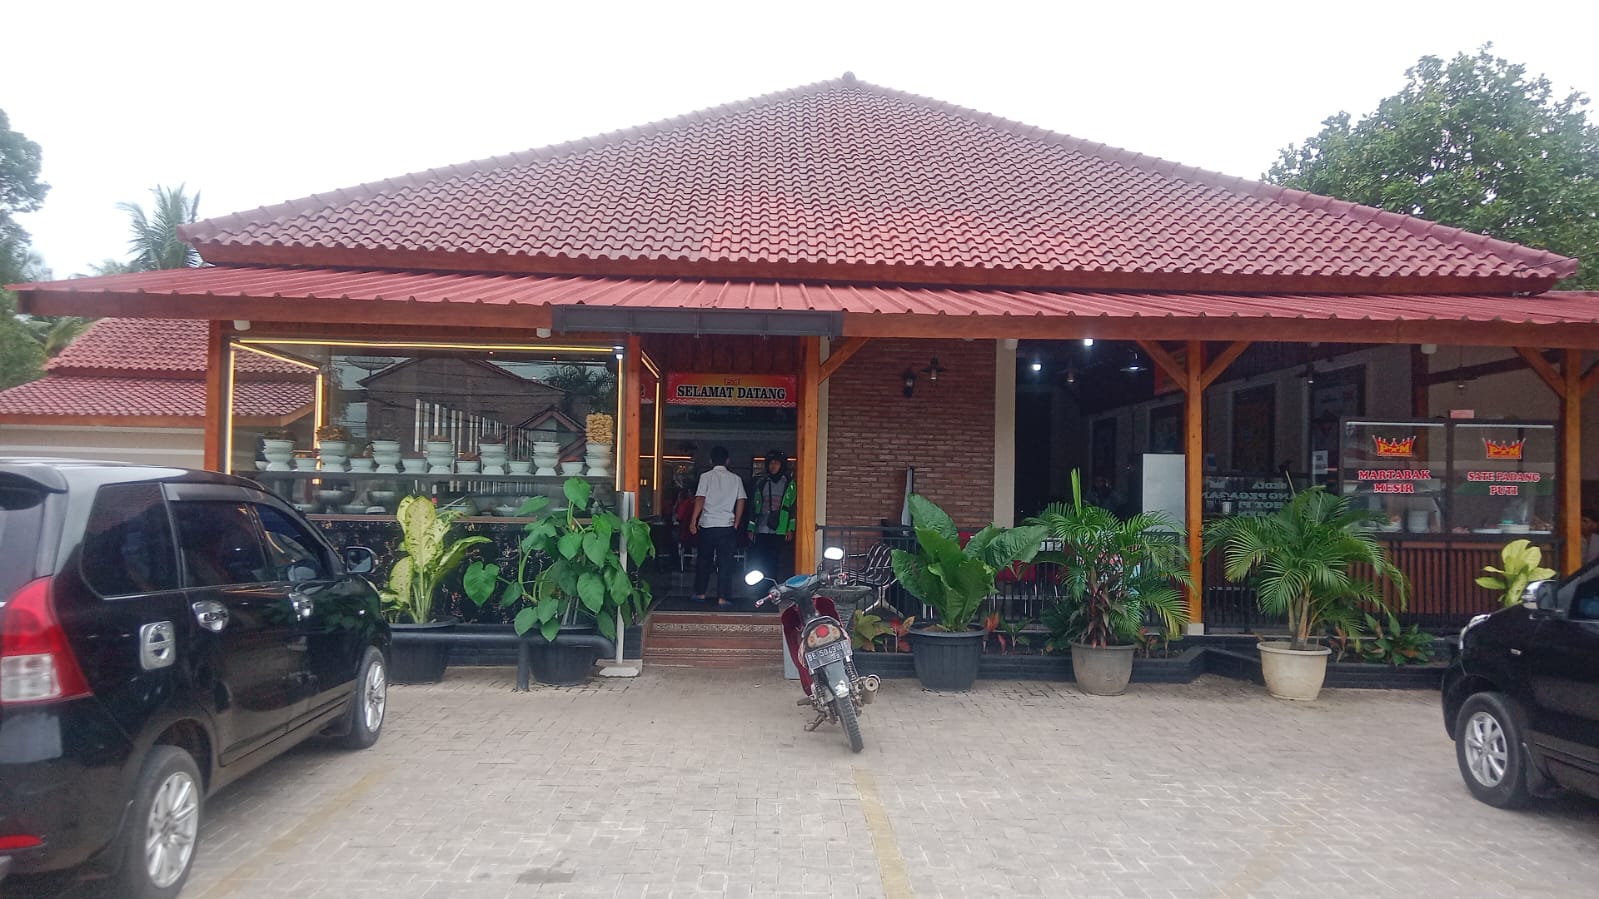 Inilah Rumah Makan Khas Padang Terfavorit di Pringsewu Yang Buka 24 Jam